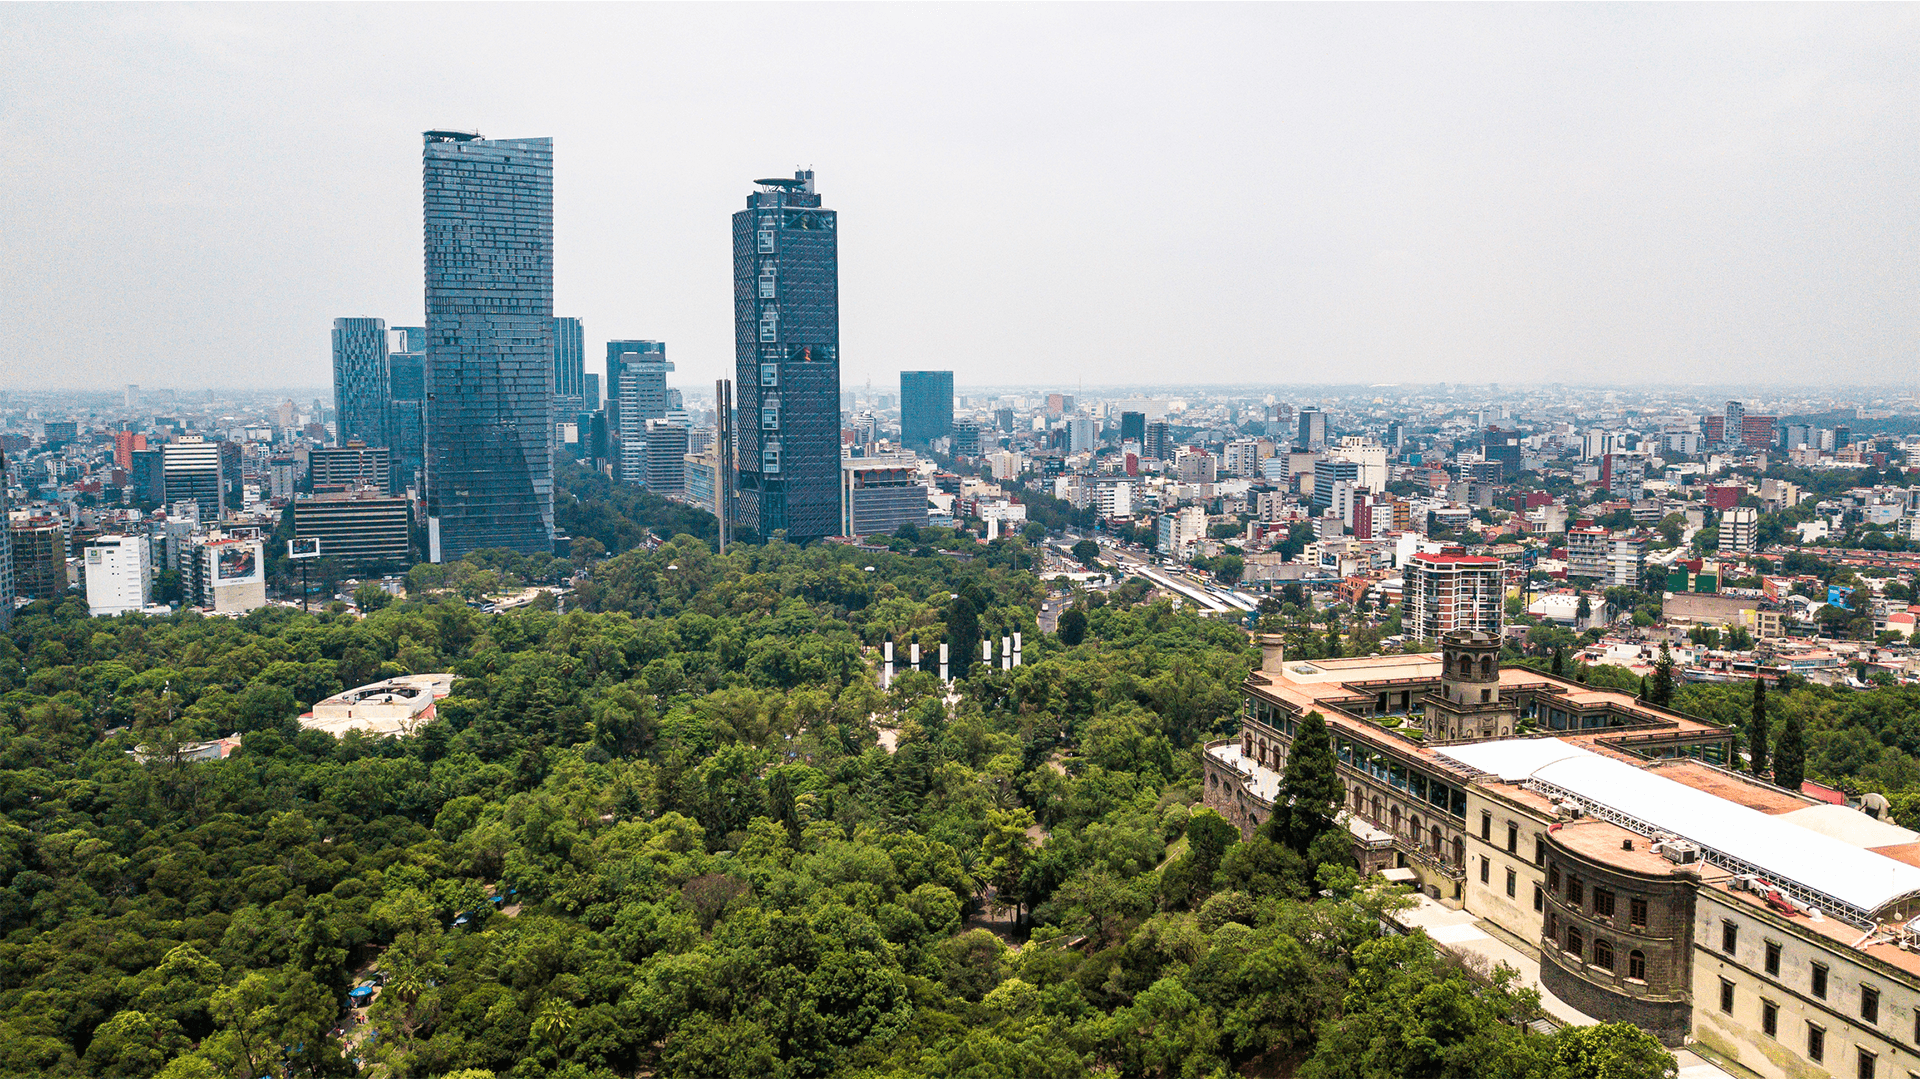 Bosque de Chapultepec, considerado uno de los pulmones de la Ciudad de México